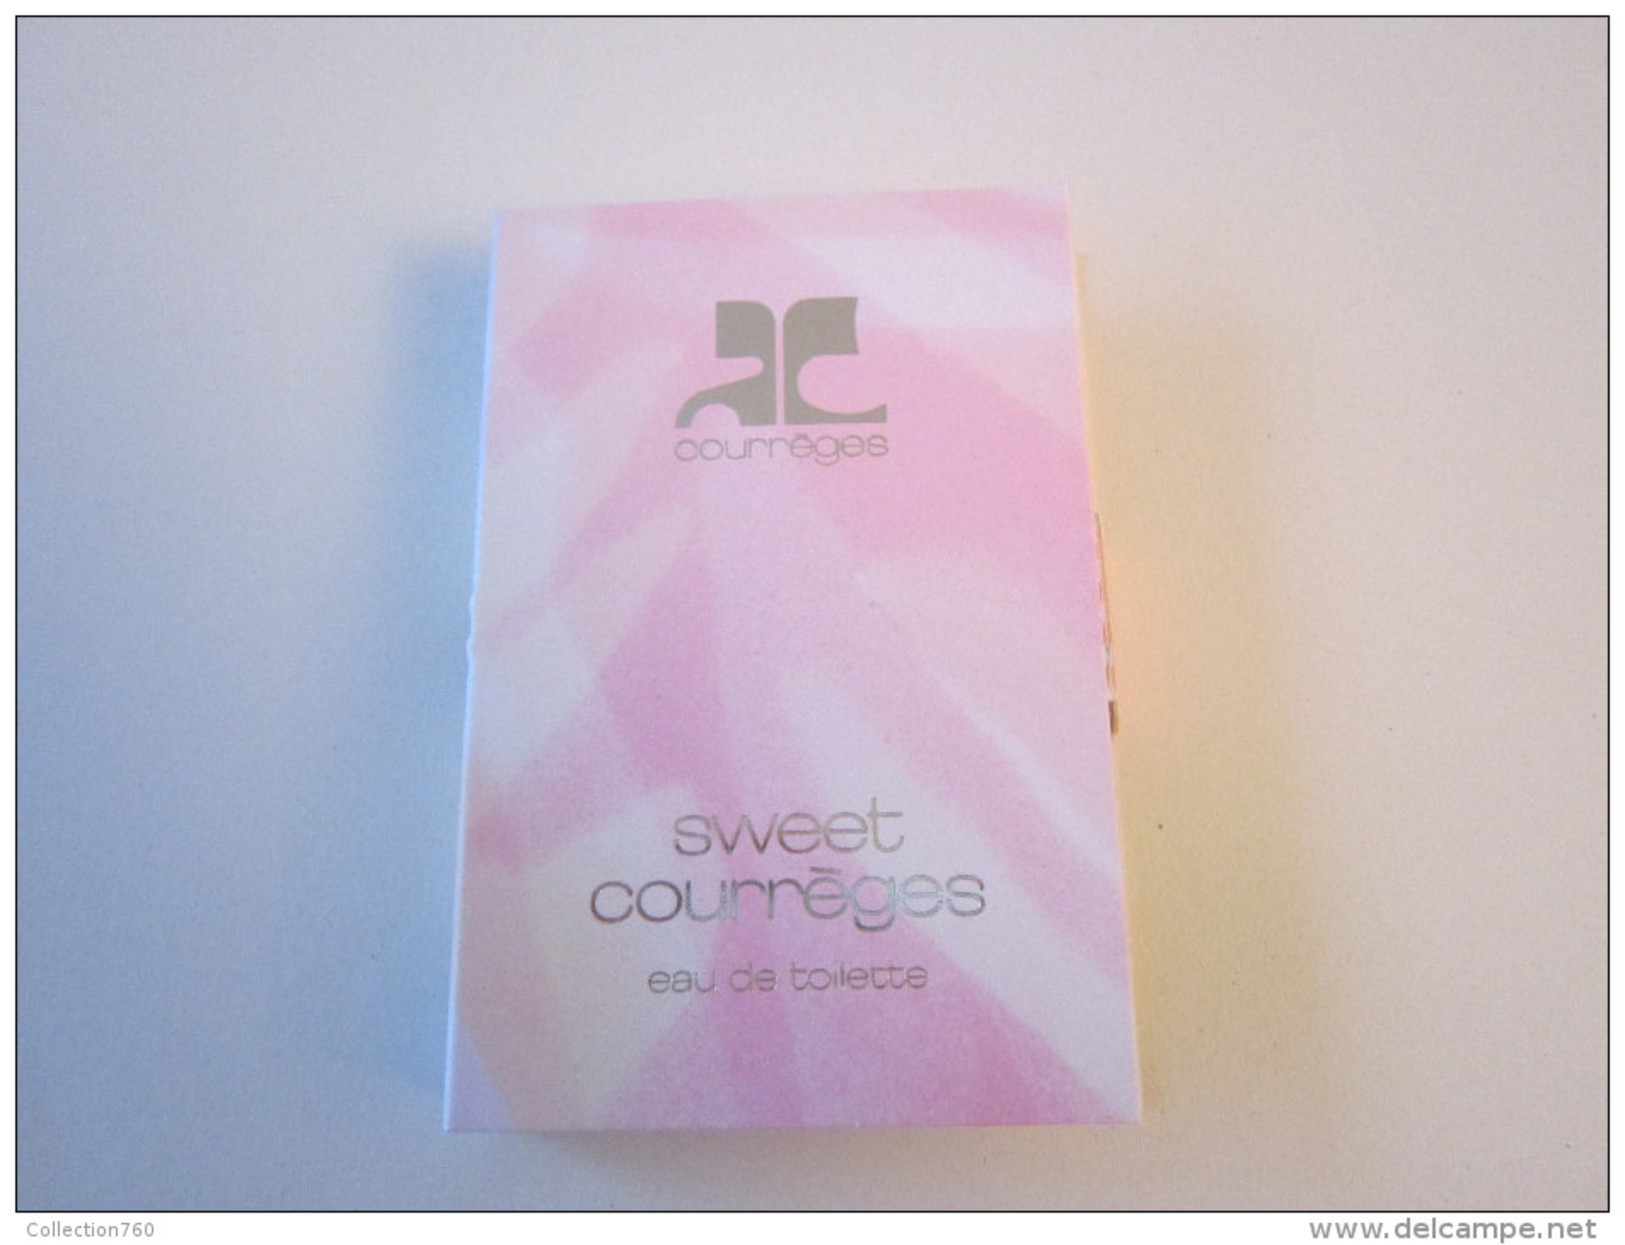 COURREGES - SWEET COURREGES - Echantillon (collector - Ne Pas Utliser) Date Des Années 1990 - Perfume Samples (testers)